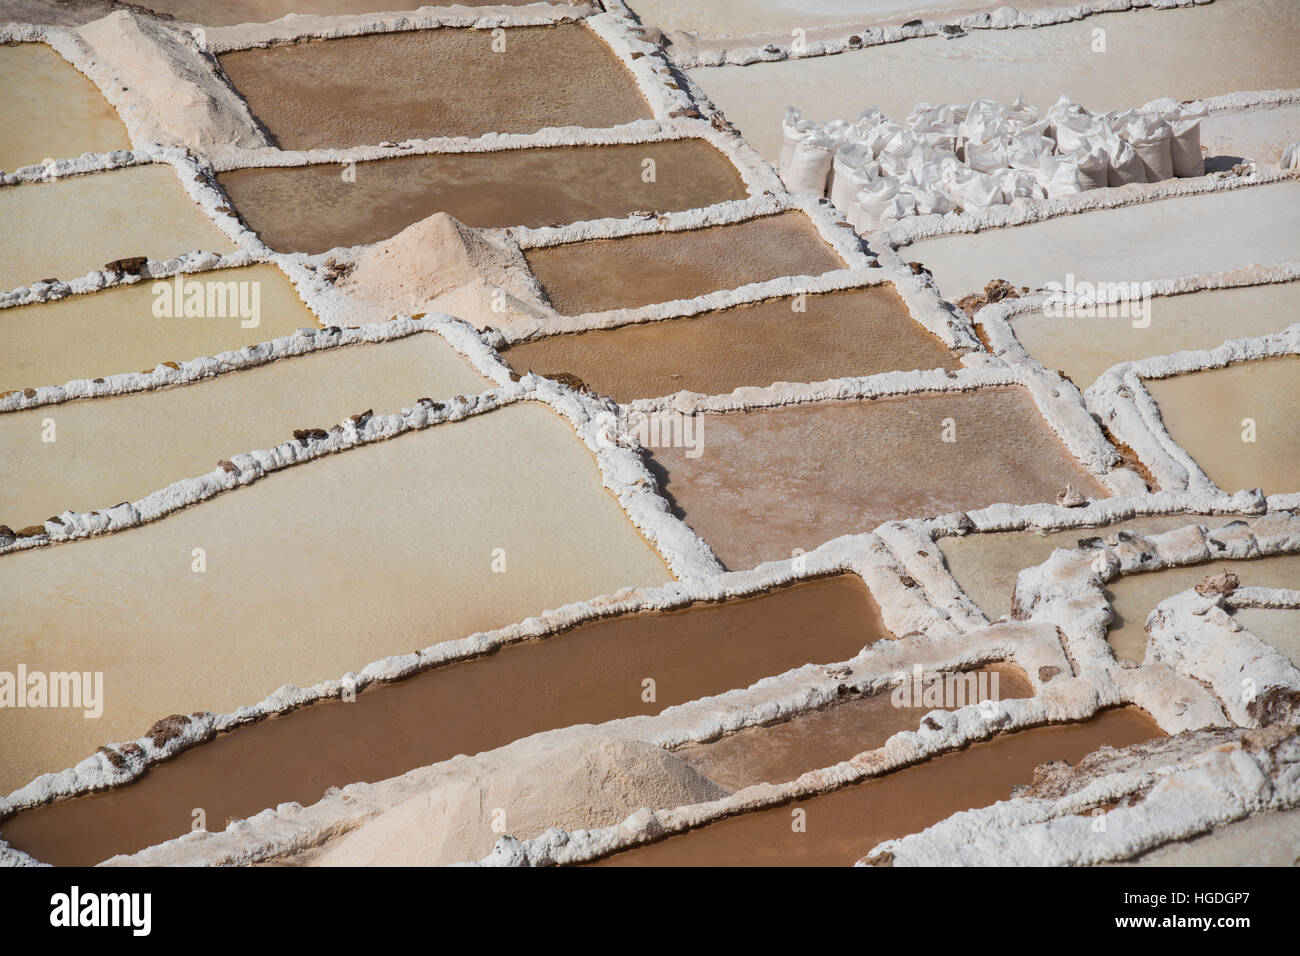 Terrazas de sal de Maras, Foto de stock